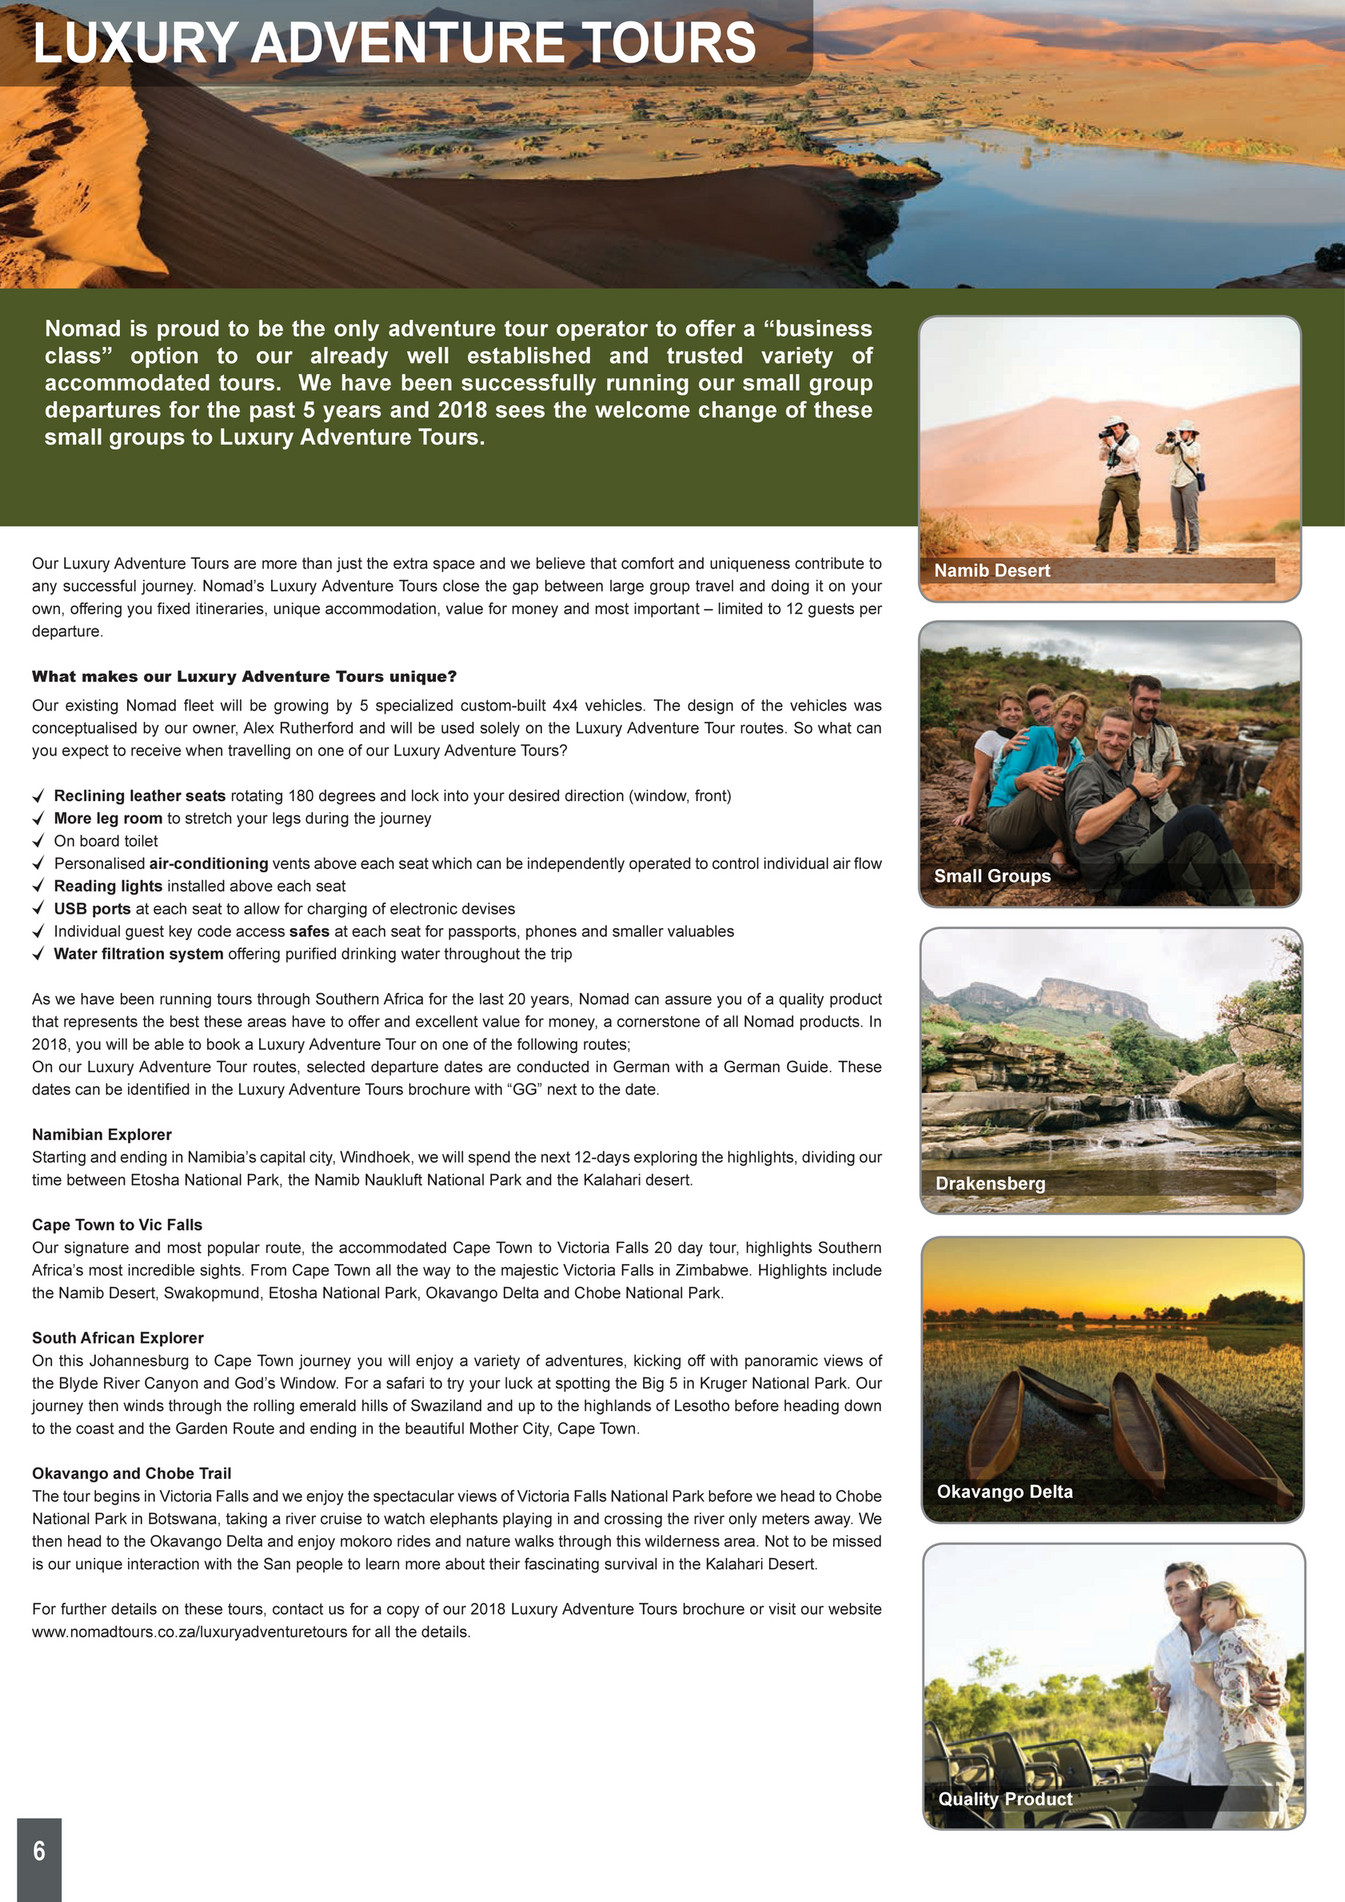 Voorzichtig Uitstroom lijden 2du - Nomad Africa Tours - Page 6-7 - Created with Publitas.com